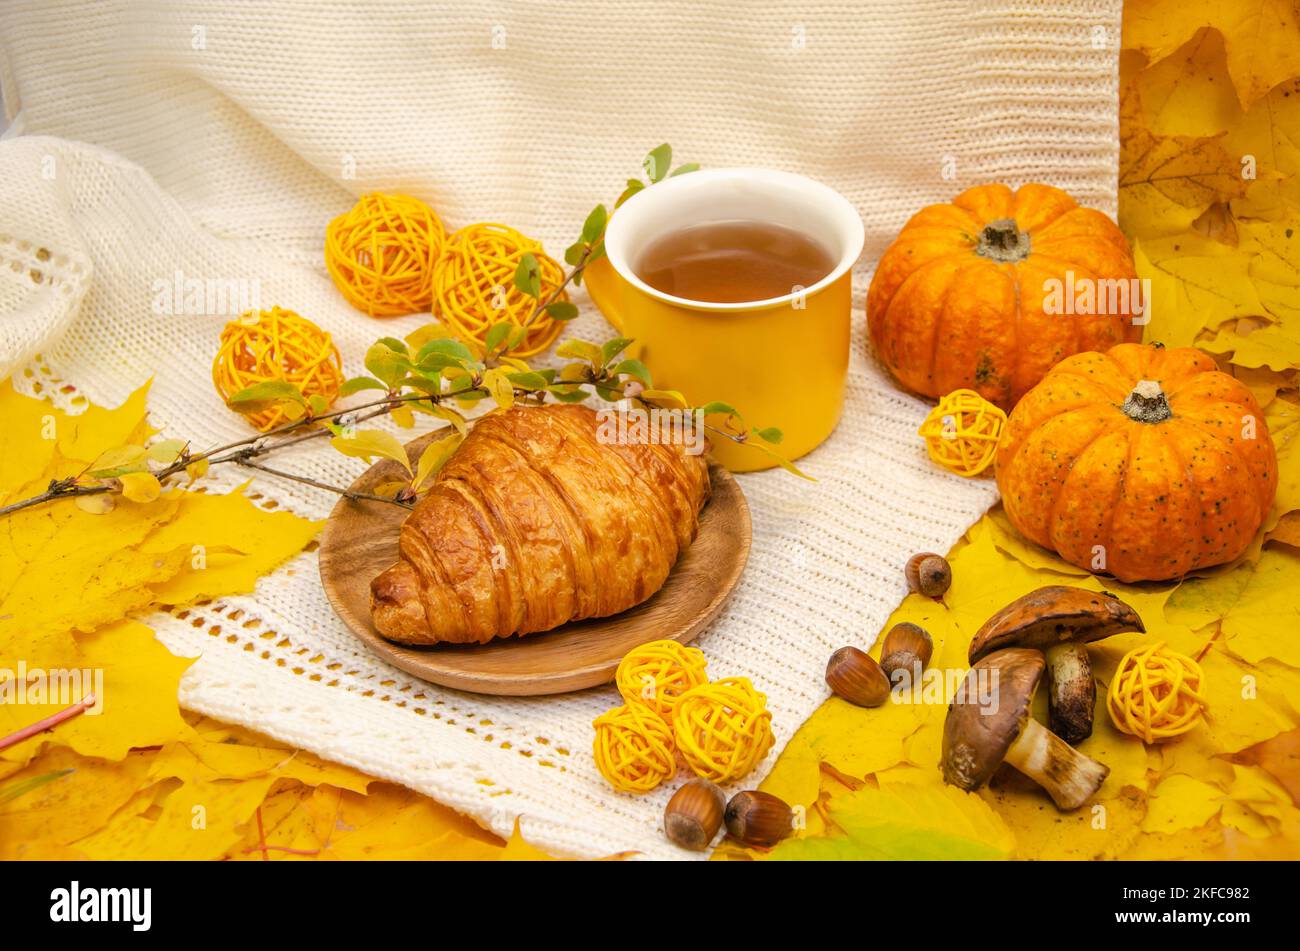 L'automne encore vie dans les tons jaune-orange: Un tricoté blanc à carreaux et feuilles, une tasse jaune et un croissant Banque D'Images